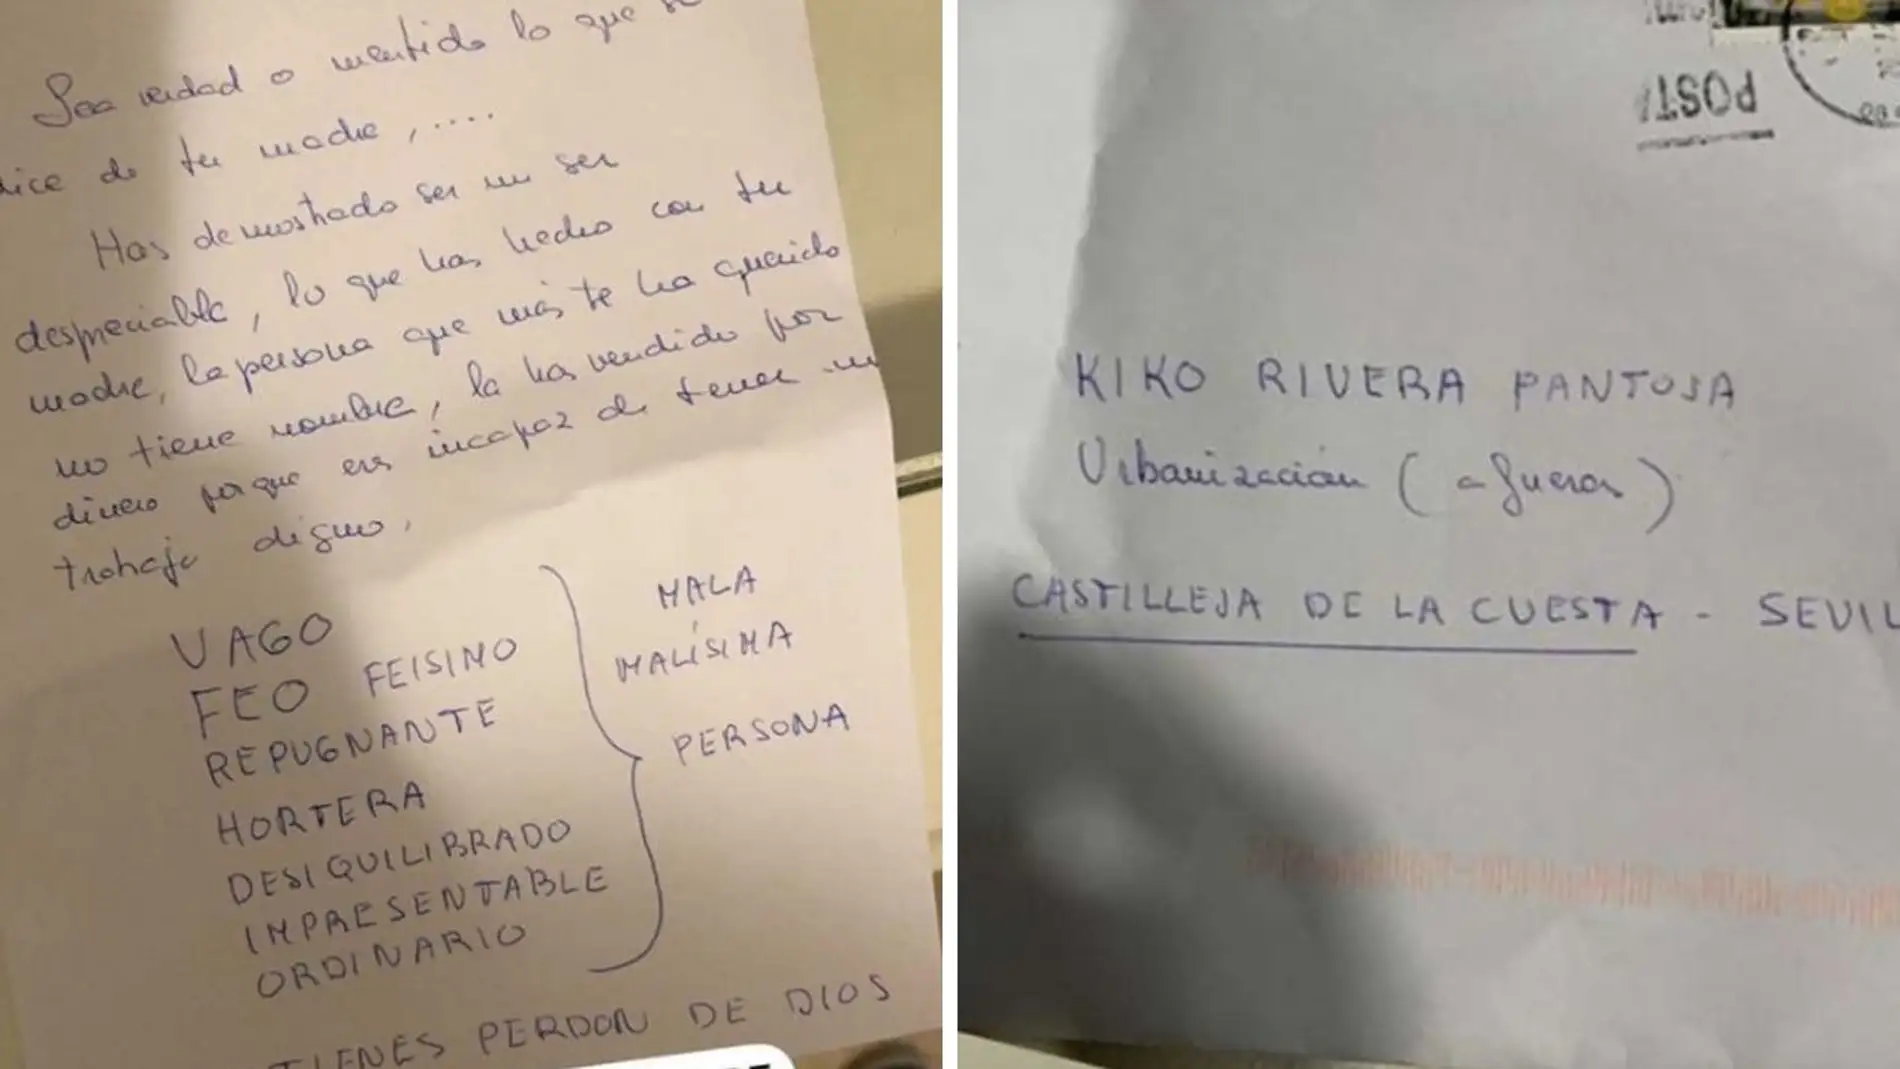 La carta que ha recibido Kiko Rivera